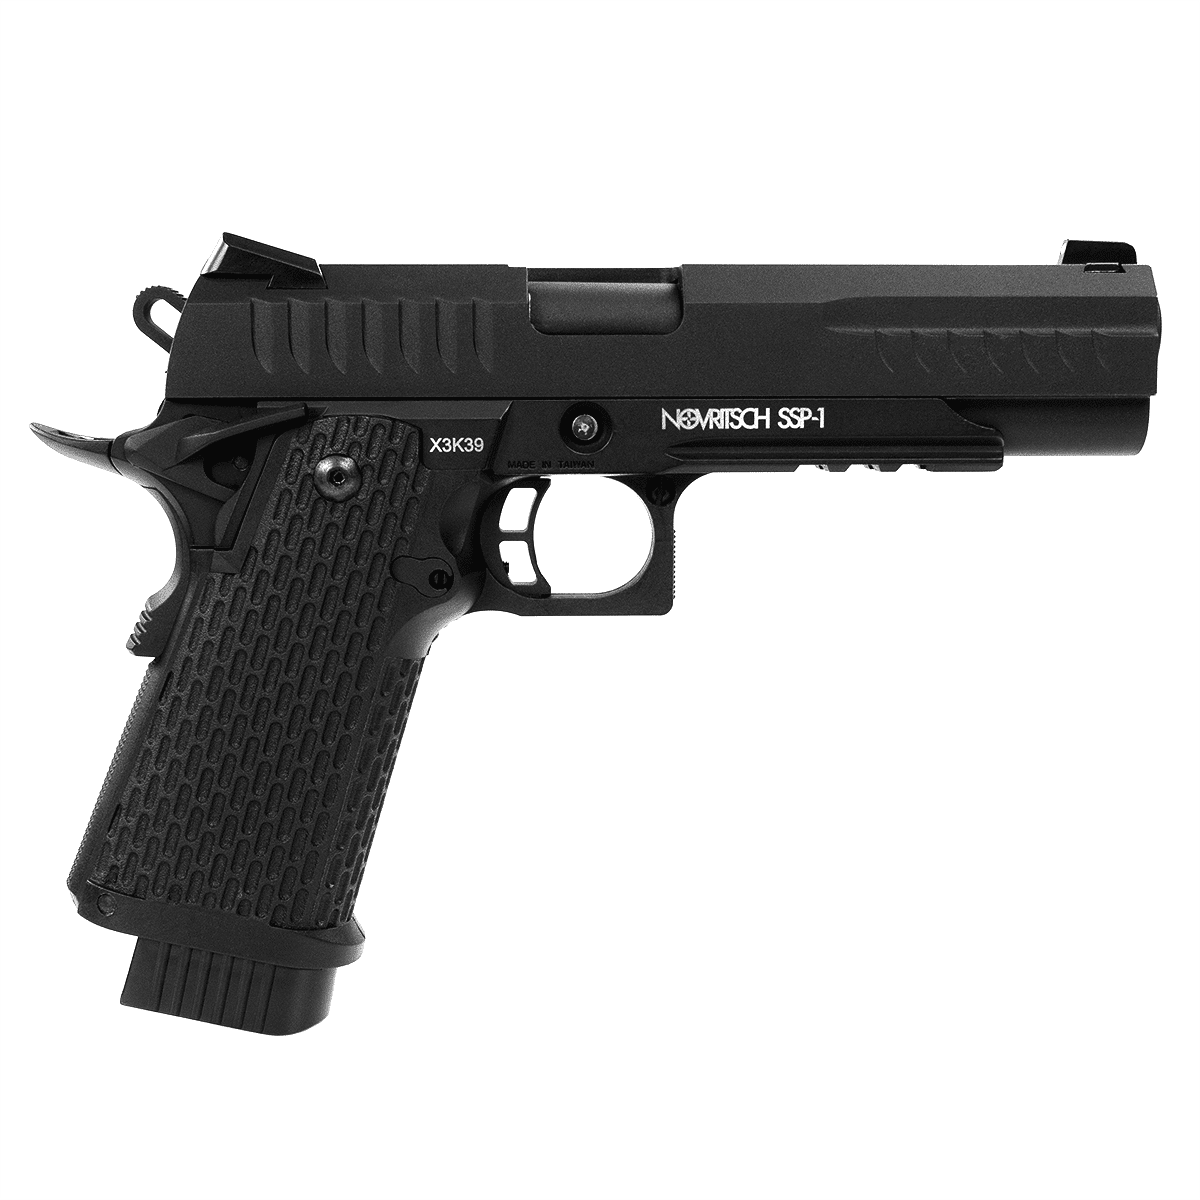 SSP1 GBB Airsoft Pistol - Novritsch